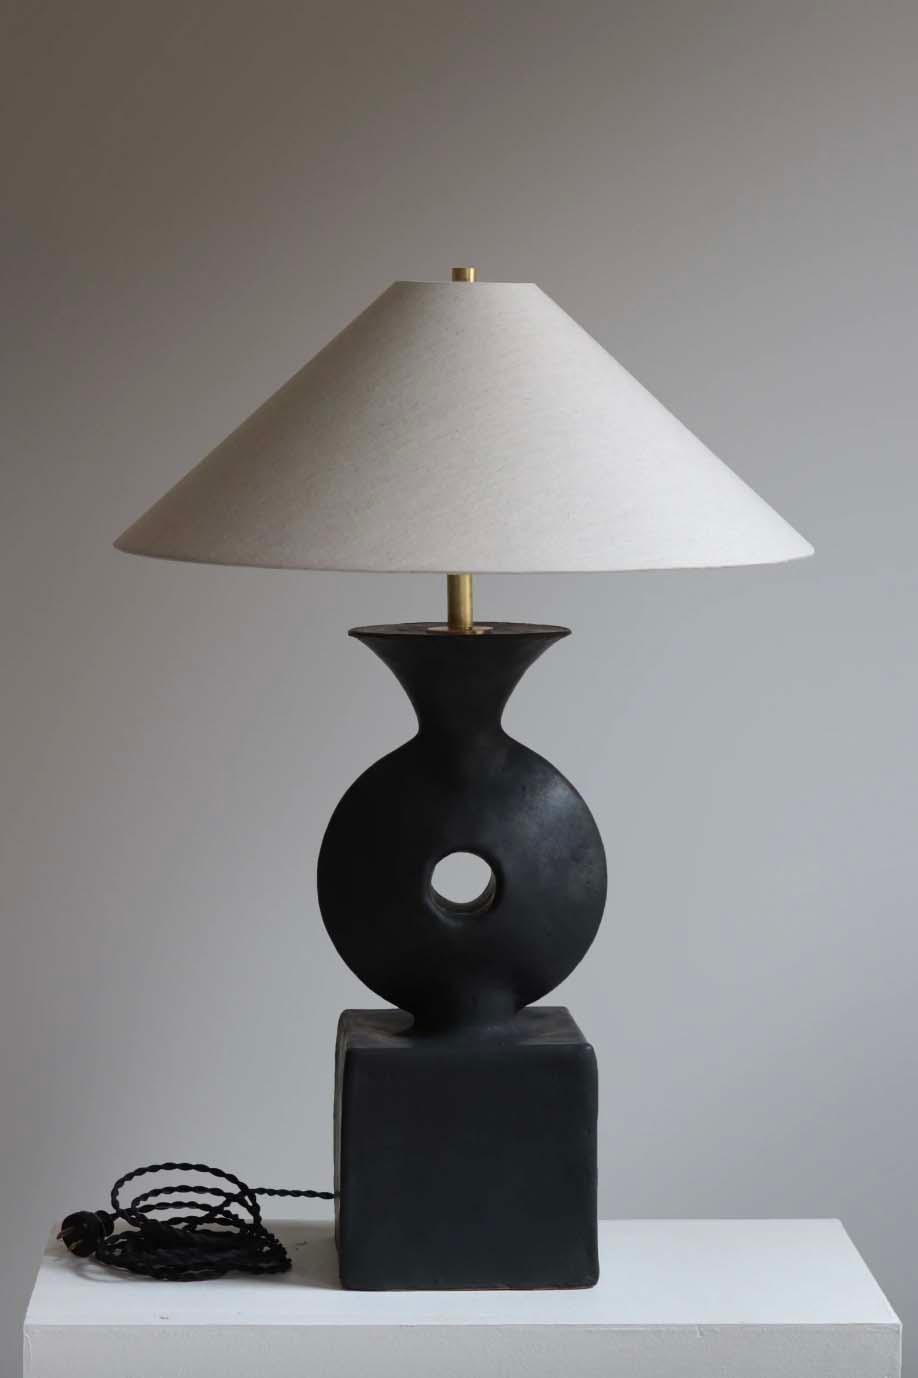 Die Lampe Felix ist eine handgefertigte Studiotöpferei des Keramikkünstlers Danny Kaplan. Inklusive Lampenschirm. Bitte beachten Sie, dass die genauen Abmessungen variieren können.

Geboren in New York City und aufgewachsen in Aix-en-Provence,